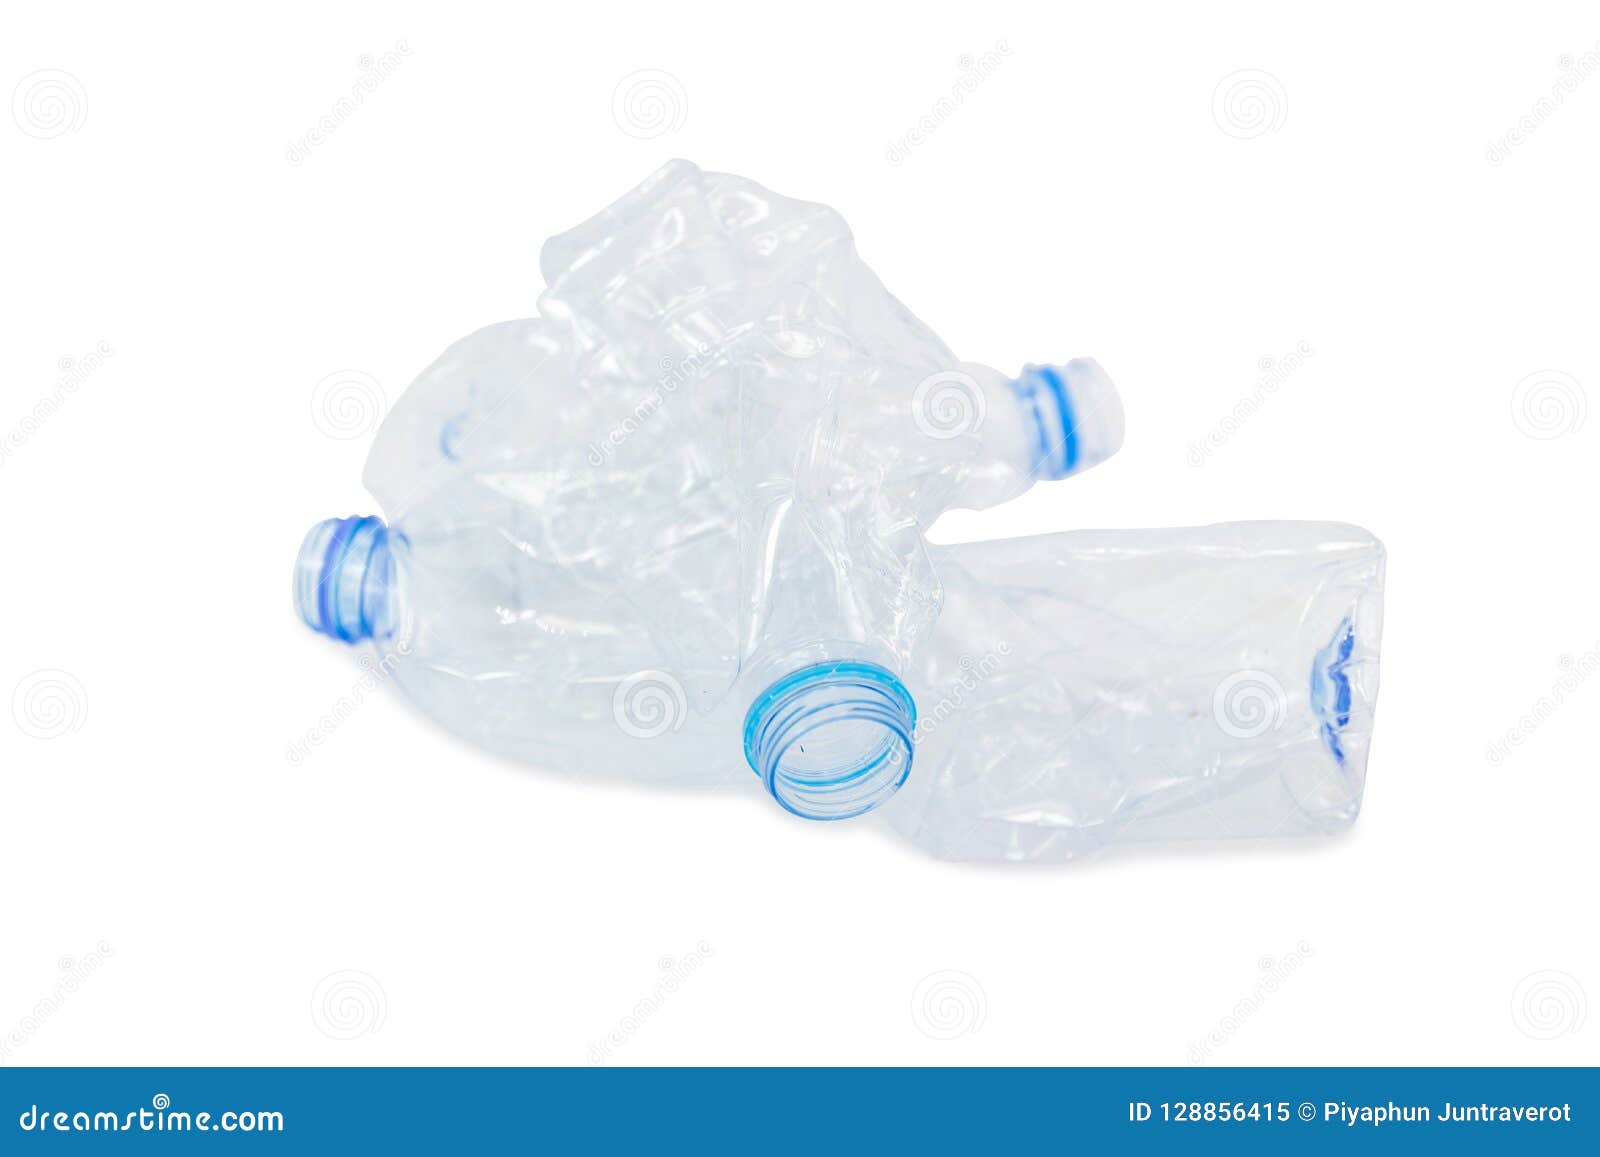 Τα απόβλητα από τα πλαστικά μπουκάλια για την ανακύκλωση θα ανακυκλωθούν  Στοκ Εικόνα - εικόνα από : 128856415